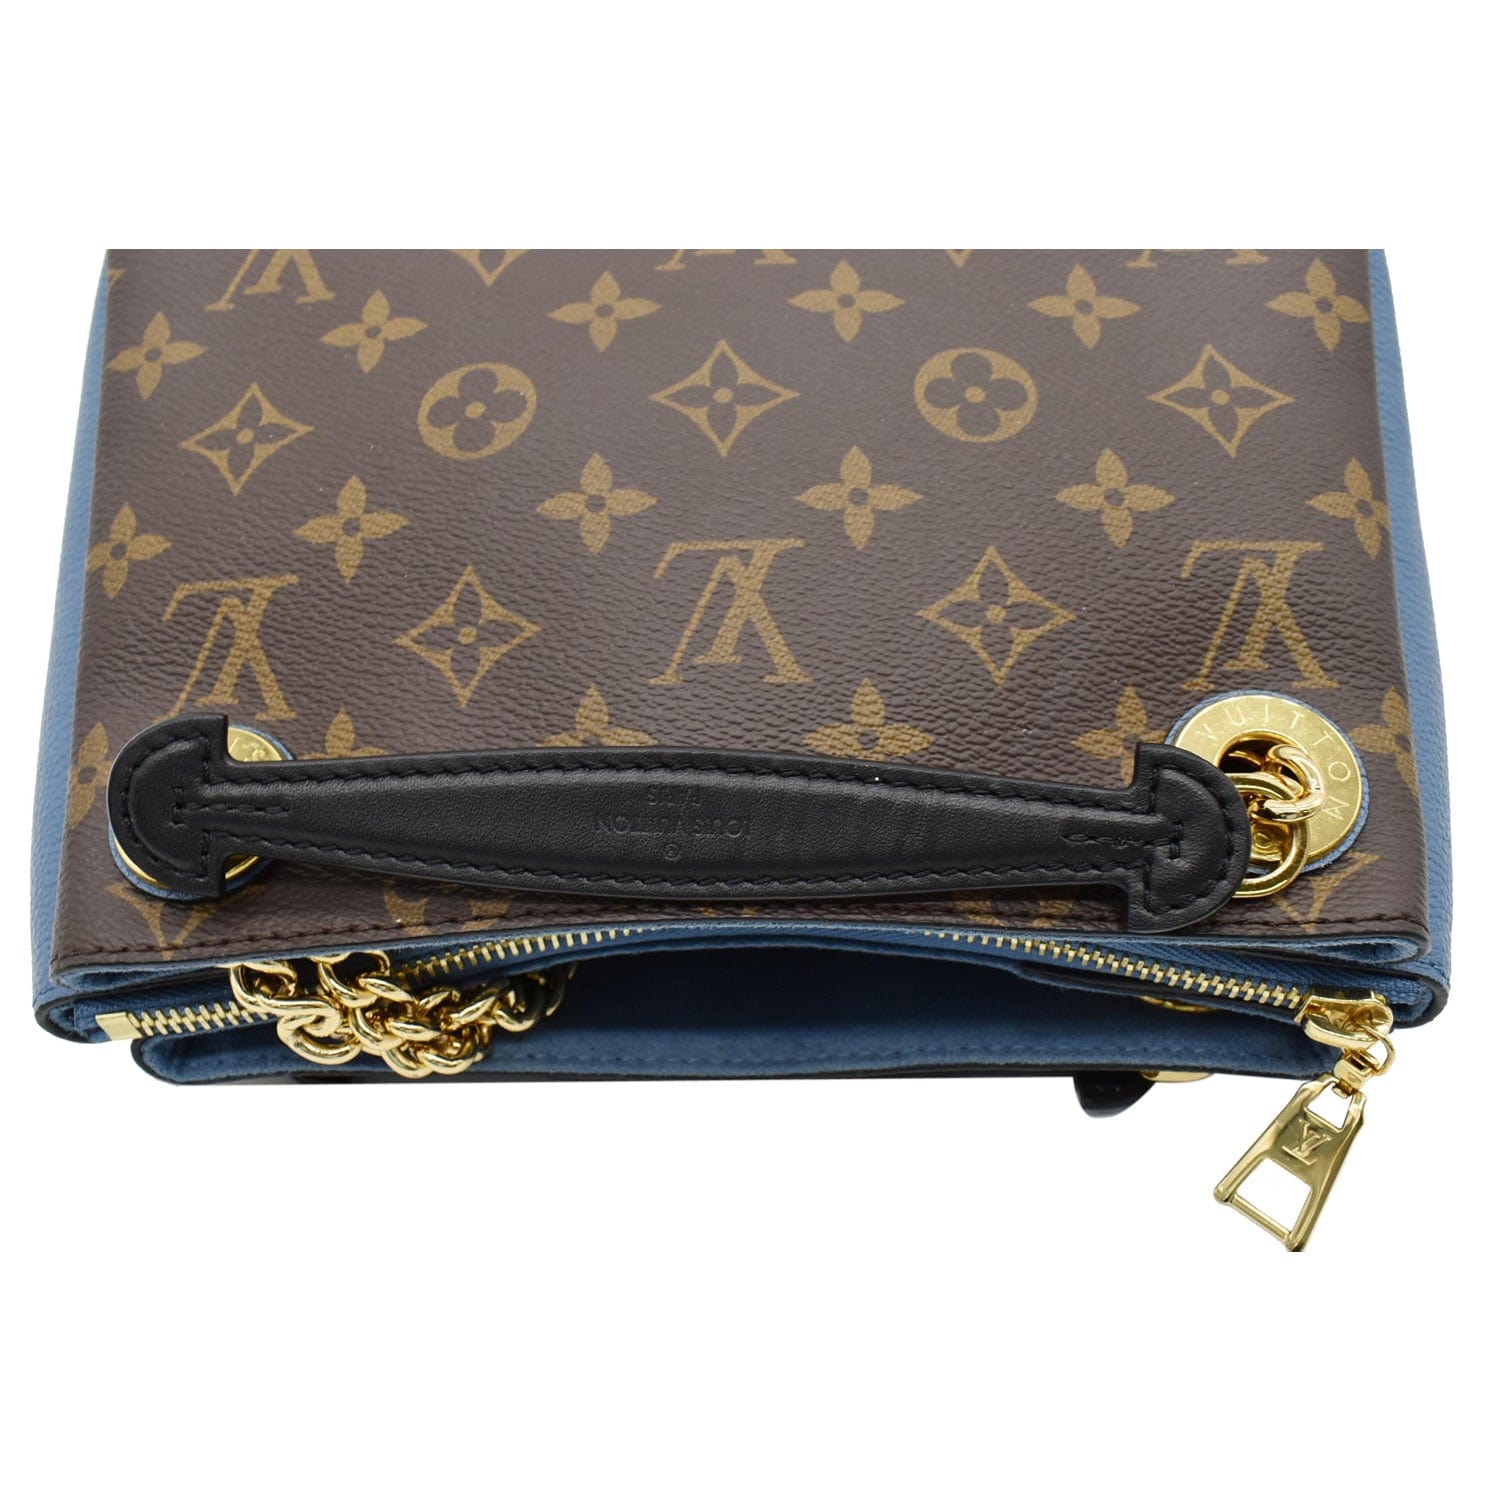 Surène bb leather handbag Louis Vuitton Multicolour in Leather - 30537997